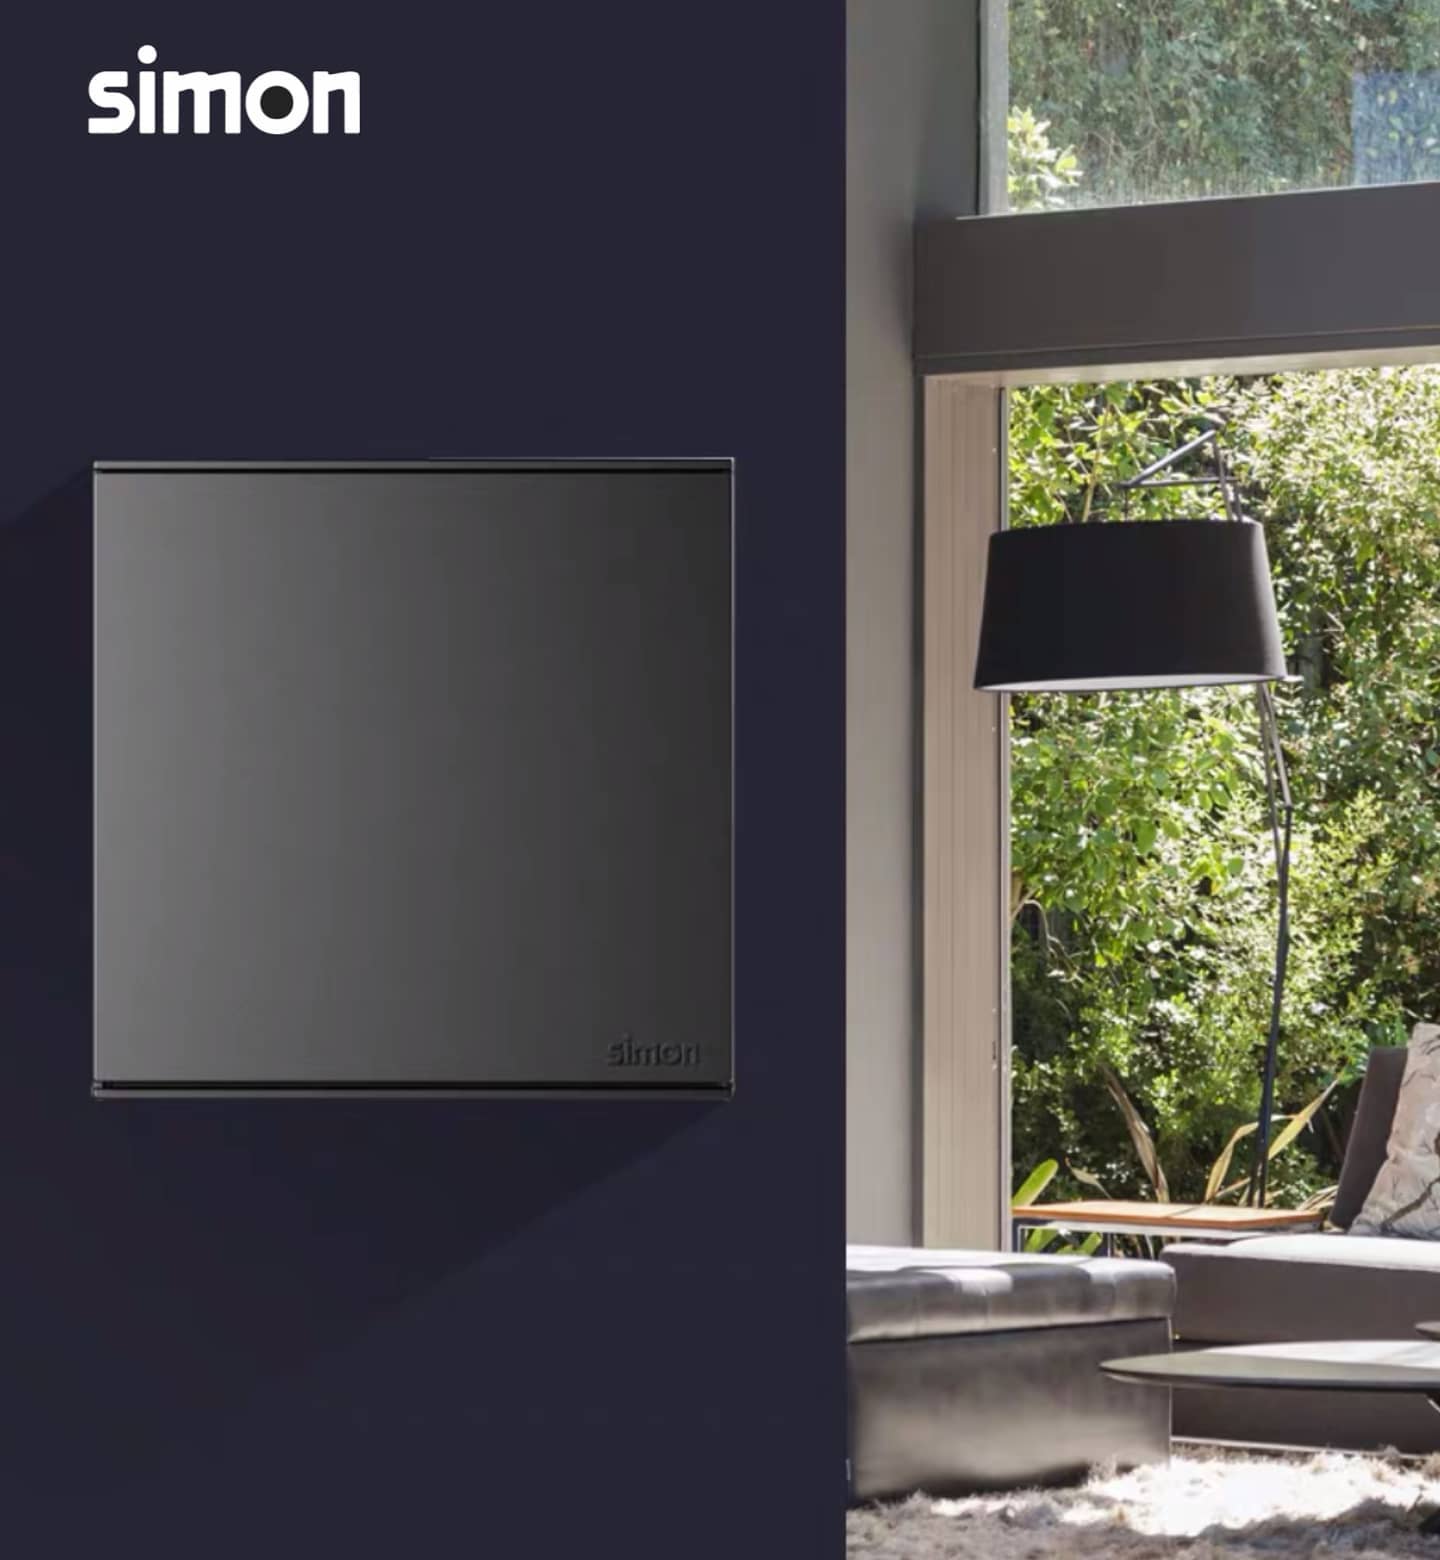 Simon Electric Light Switch E6 Series